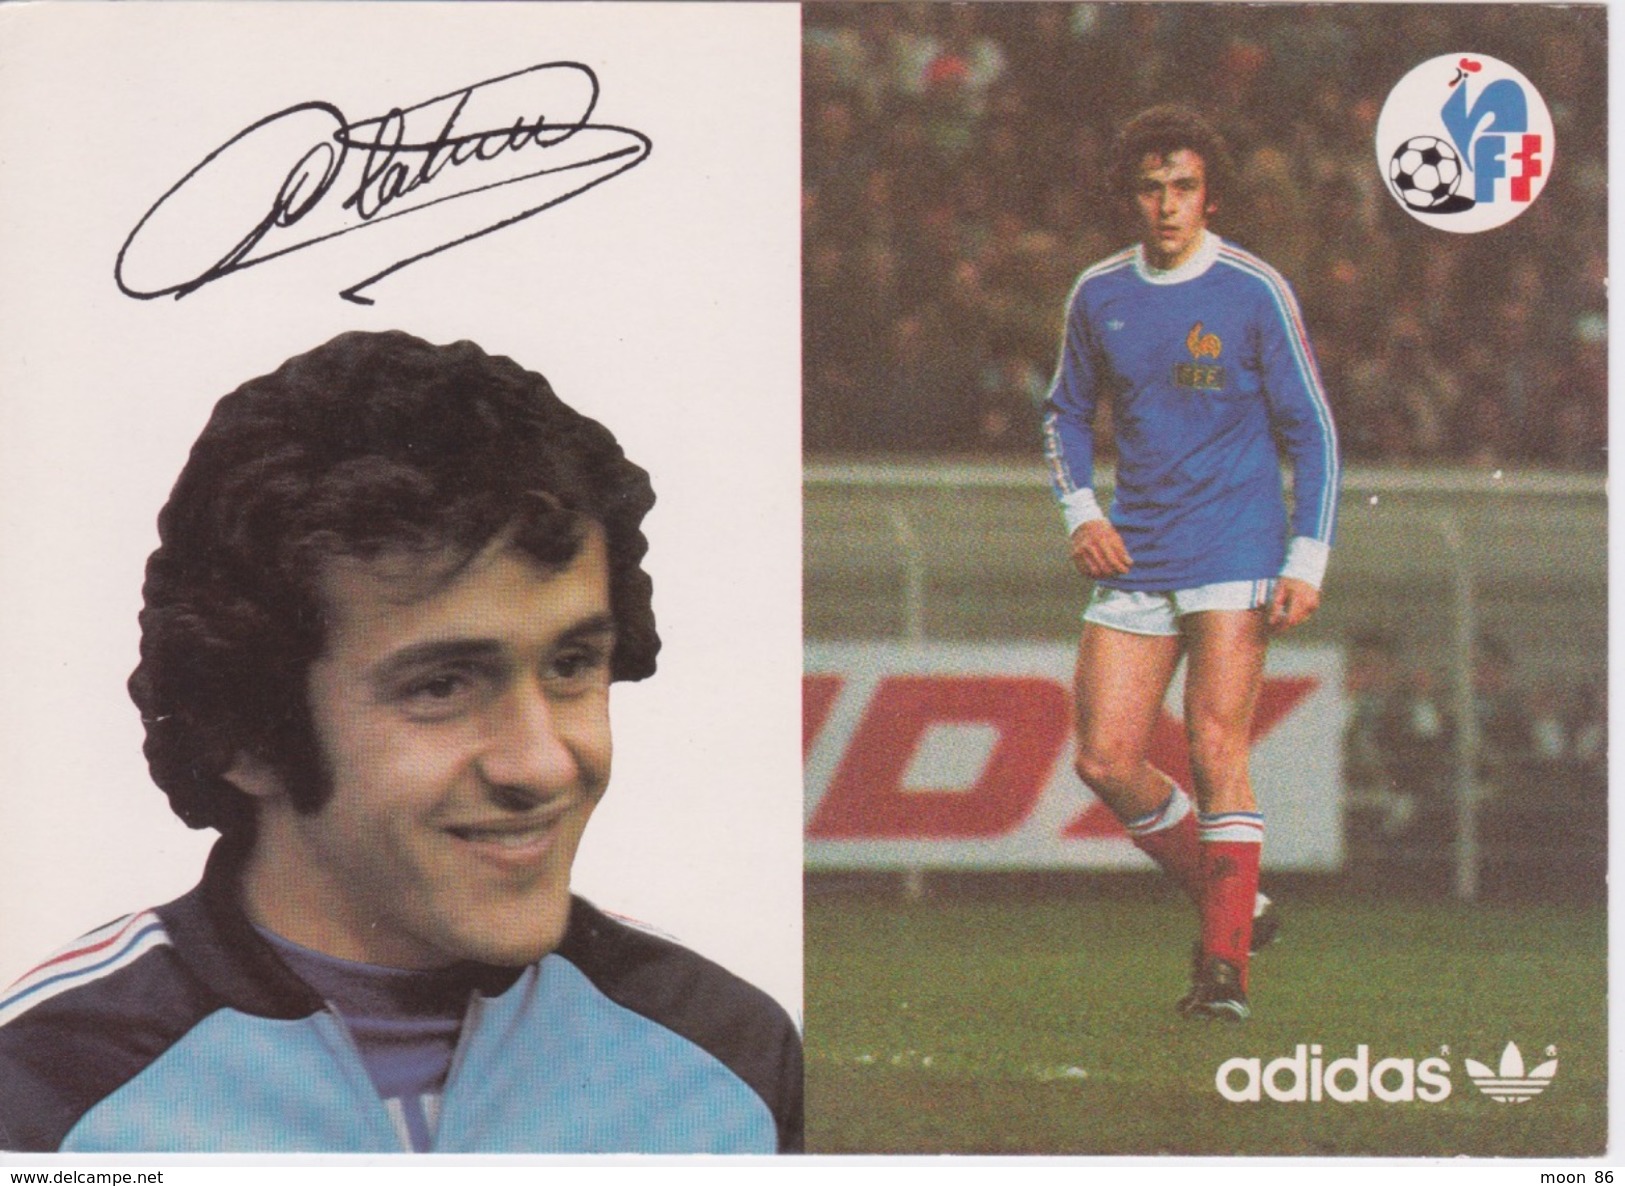 13 Cartes Postale - Equipe De France   FOOTBALL 1978 - CARTE ORIGINALE DE LA FFF & ADIDAS - Calcio